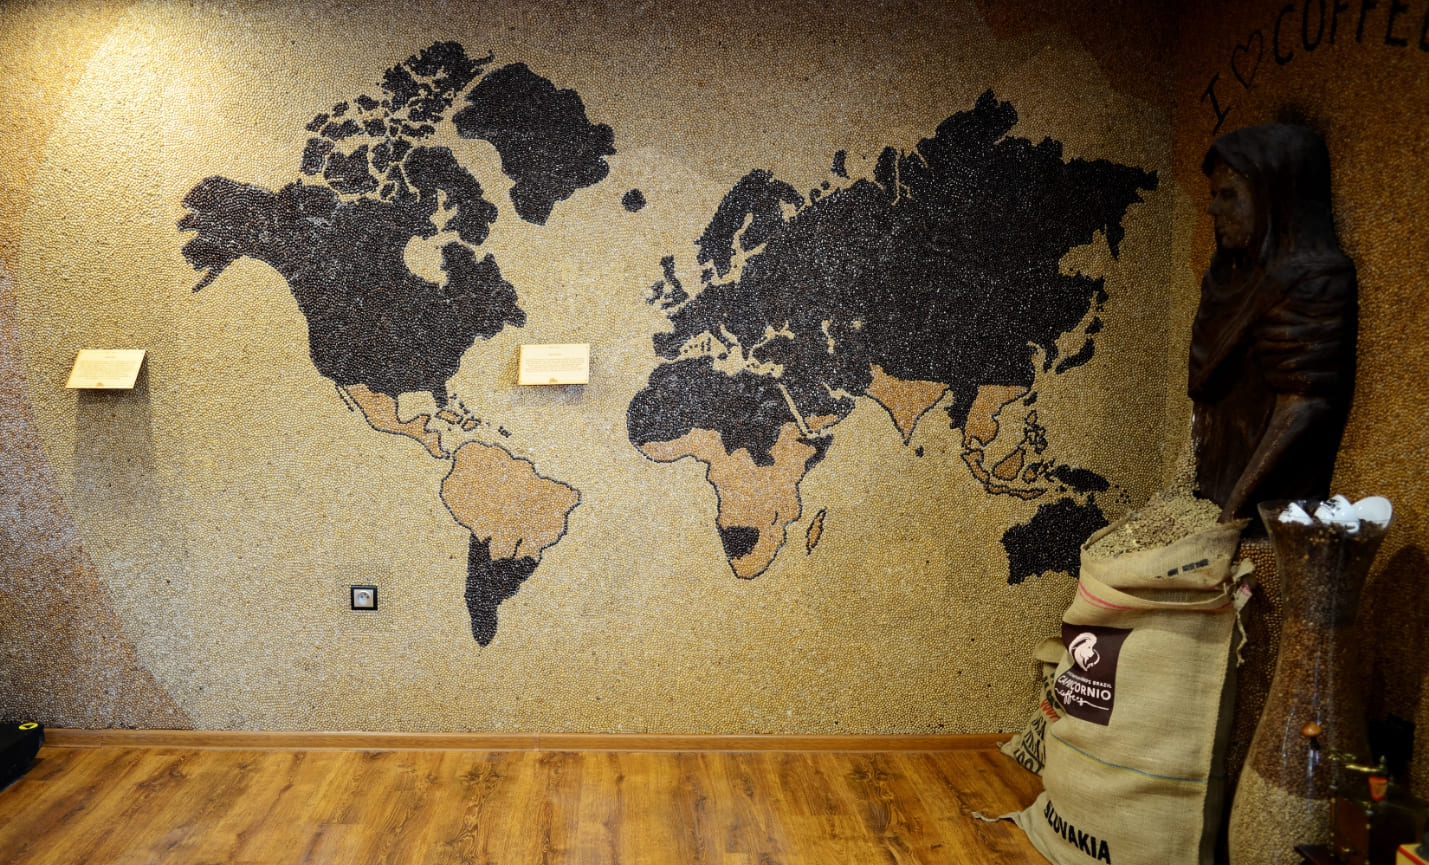 Na fotografii vidíme mozaiku, mapu sveta, vytvorenú zo zrniek kávy. Svetlejšími zrnkami sú znázornené oblasti, kde sa pestuje káva.  